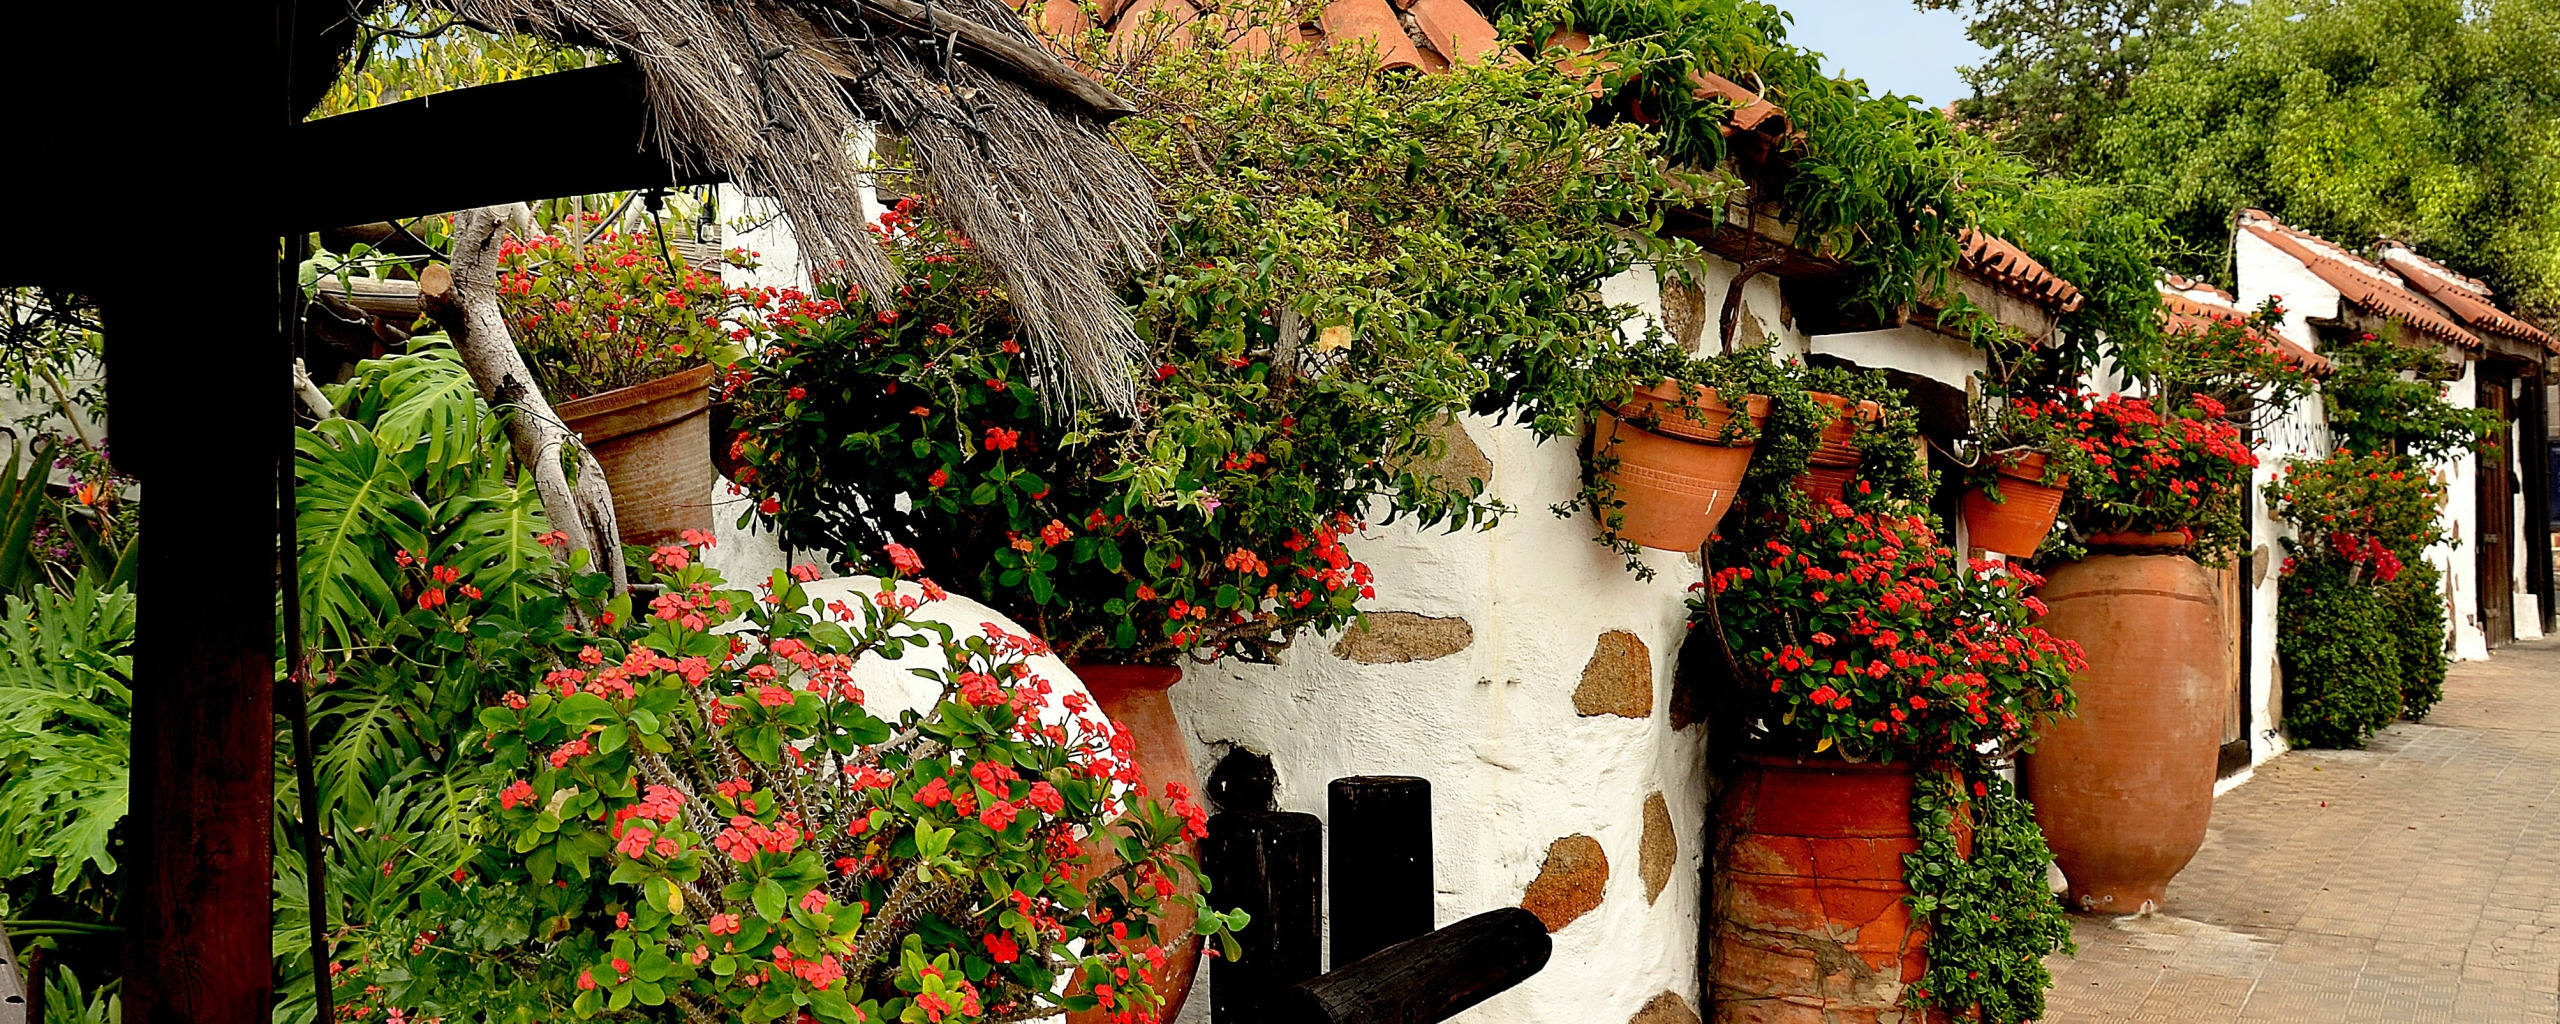 Street of flowers. Греция цветы в горшках. Деревня в цветочном горшке. Греция цветы в горшках на улице. Фотообои цветы в кашпо.